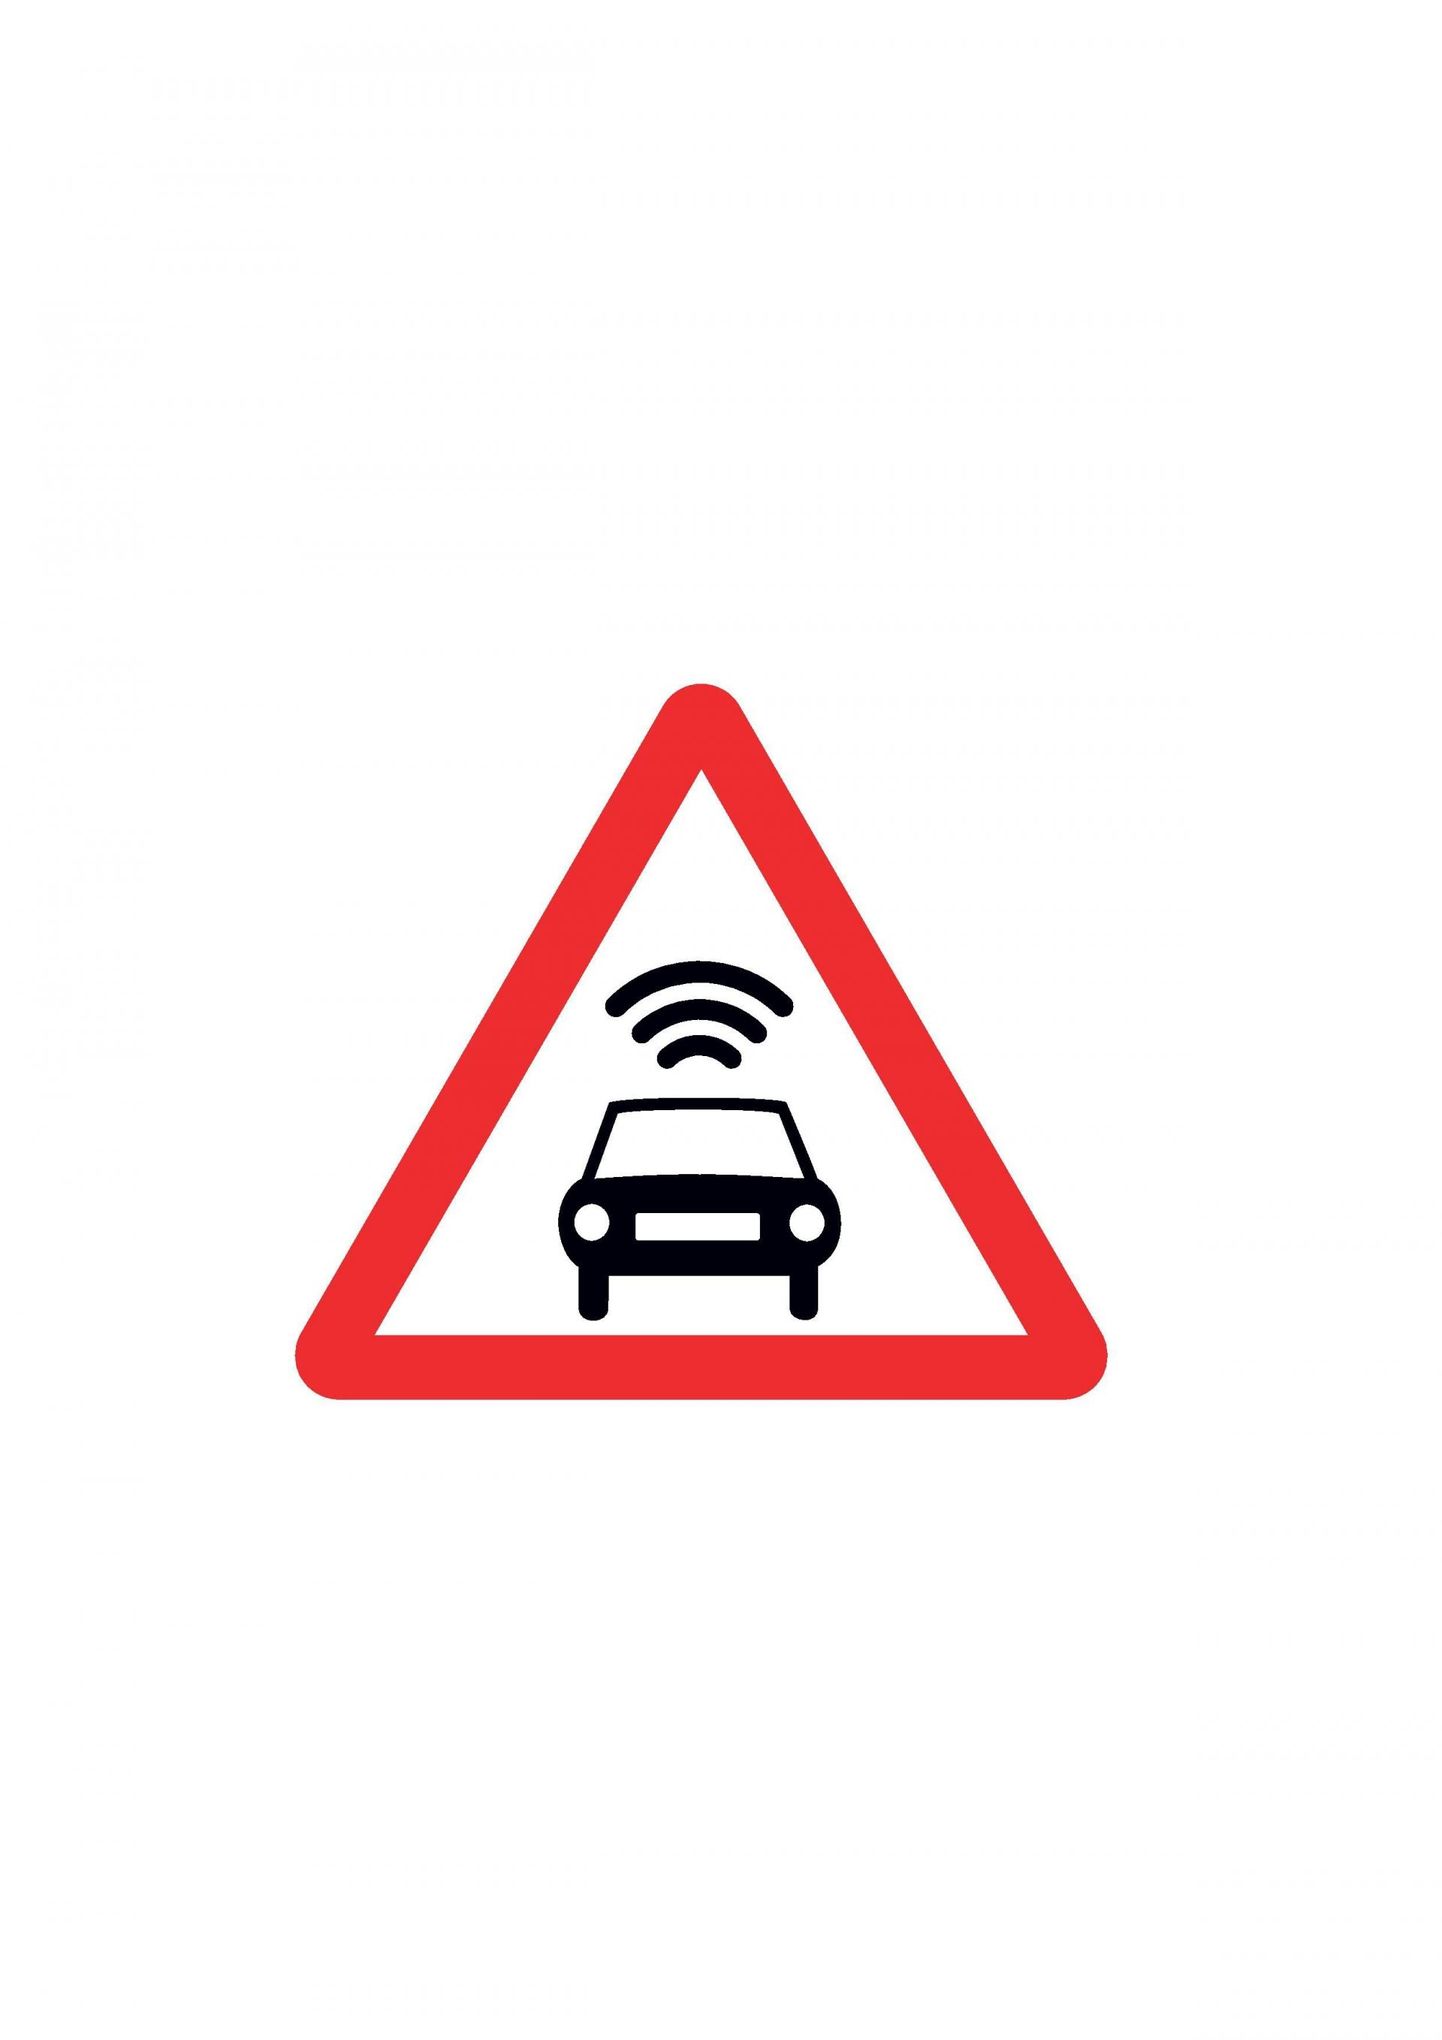 Испытательный отрезок для автоматизированных автомобилей. Предупредительный знак будет сообщать о приближении к отрезку дороги, где испытывают беспилотные автомобили.